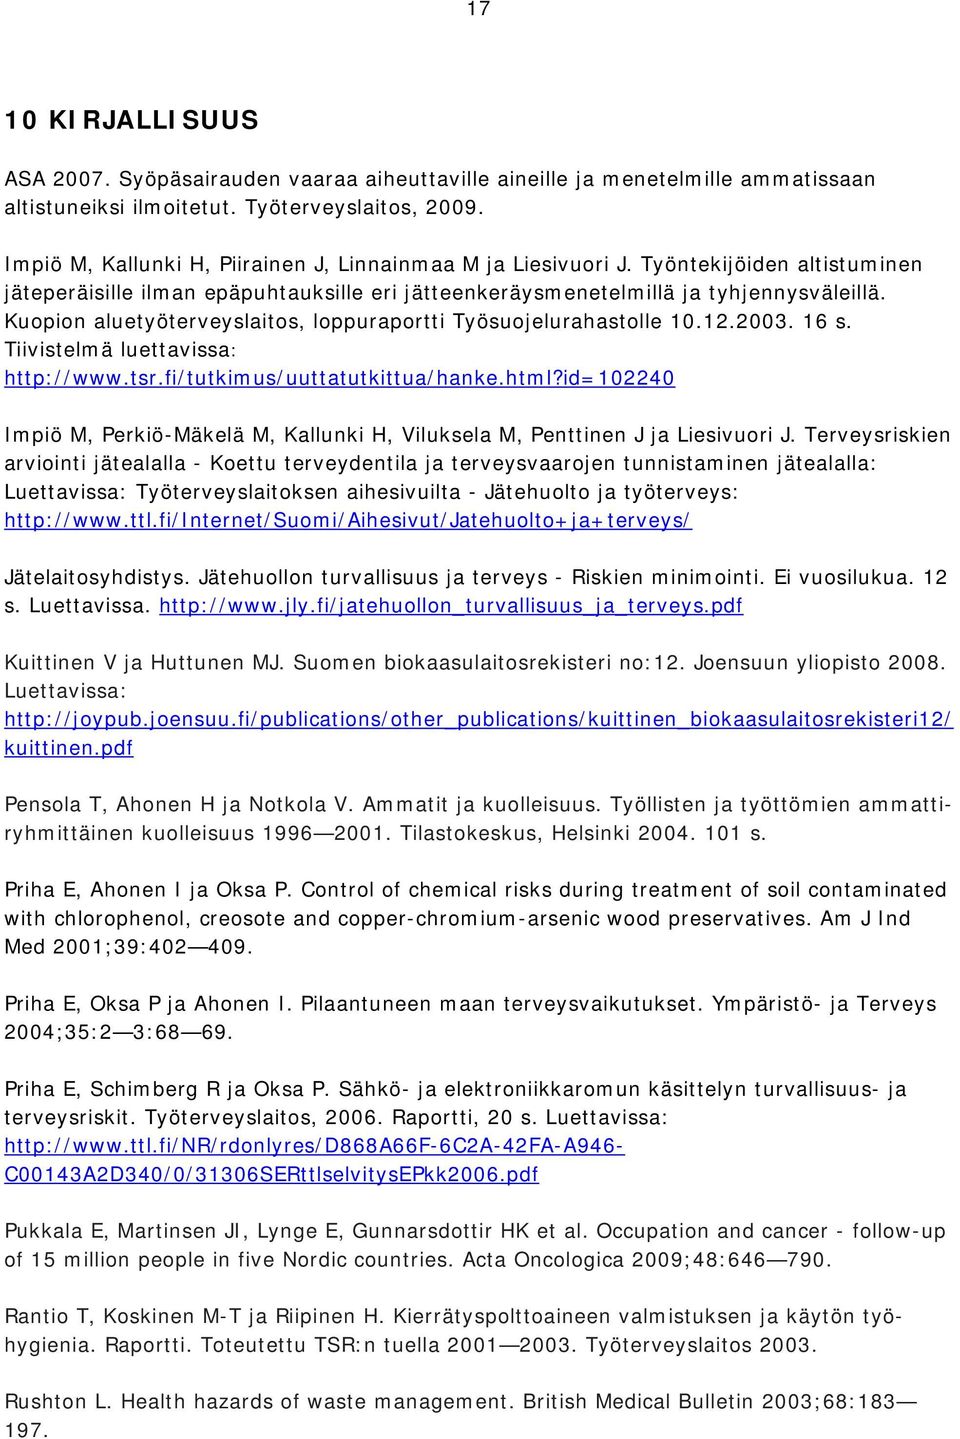 Kuopion aluetyöterveyslaitos, loppuraportti Työsuojelurahastolle 10.12.2003. 16 s. Tiivistelmä luettavissa: http://www.tsr.fi/tutkimus/uuttatutkittua/hanke.html?